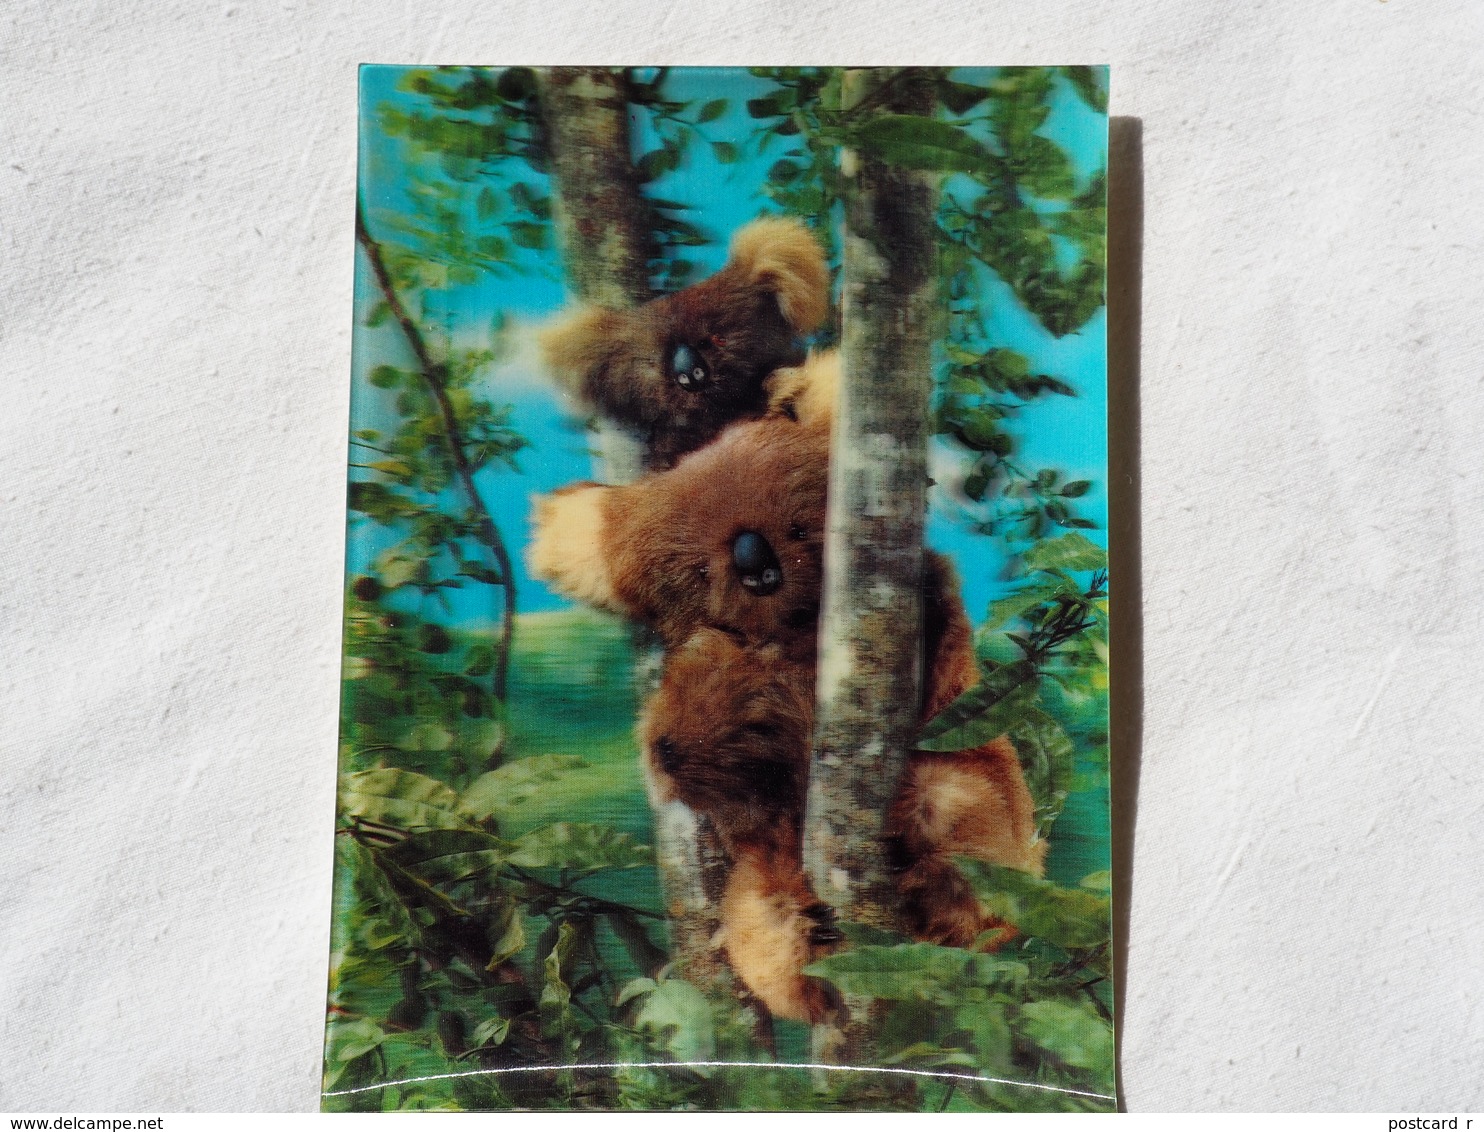 3d 3 D Lenticular Stereo Postcard Koala Bears  1969   A 190 - Stereoscope Cards